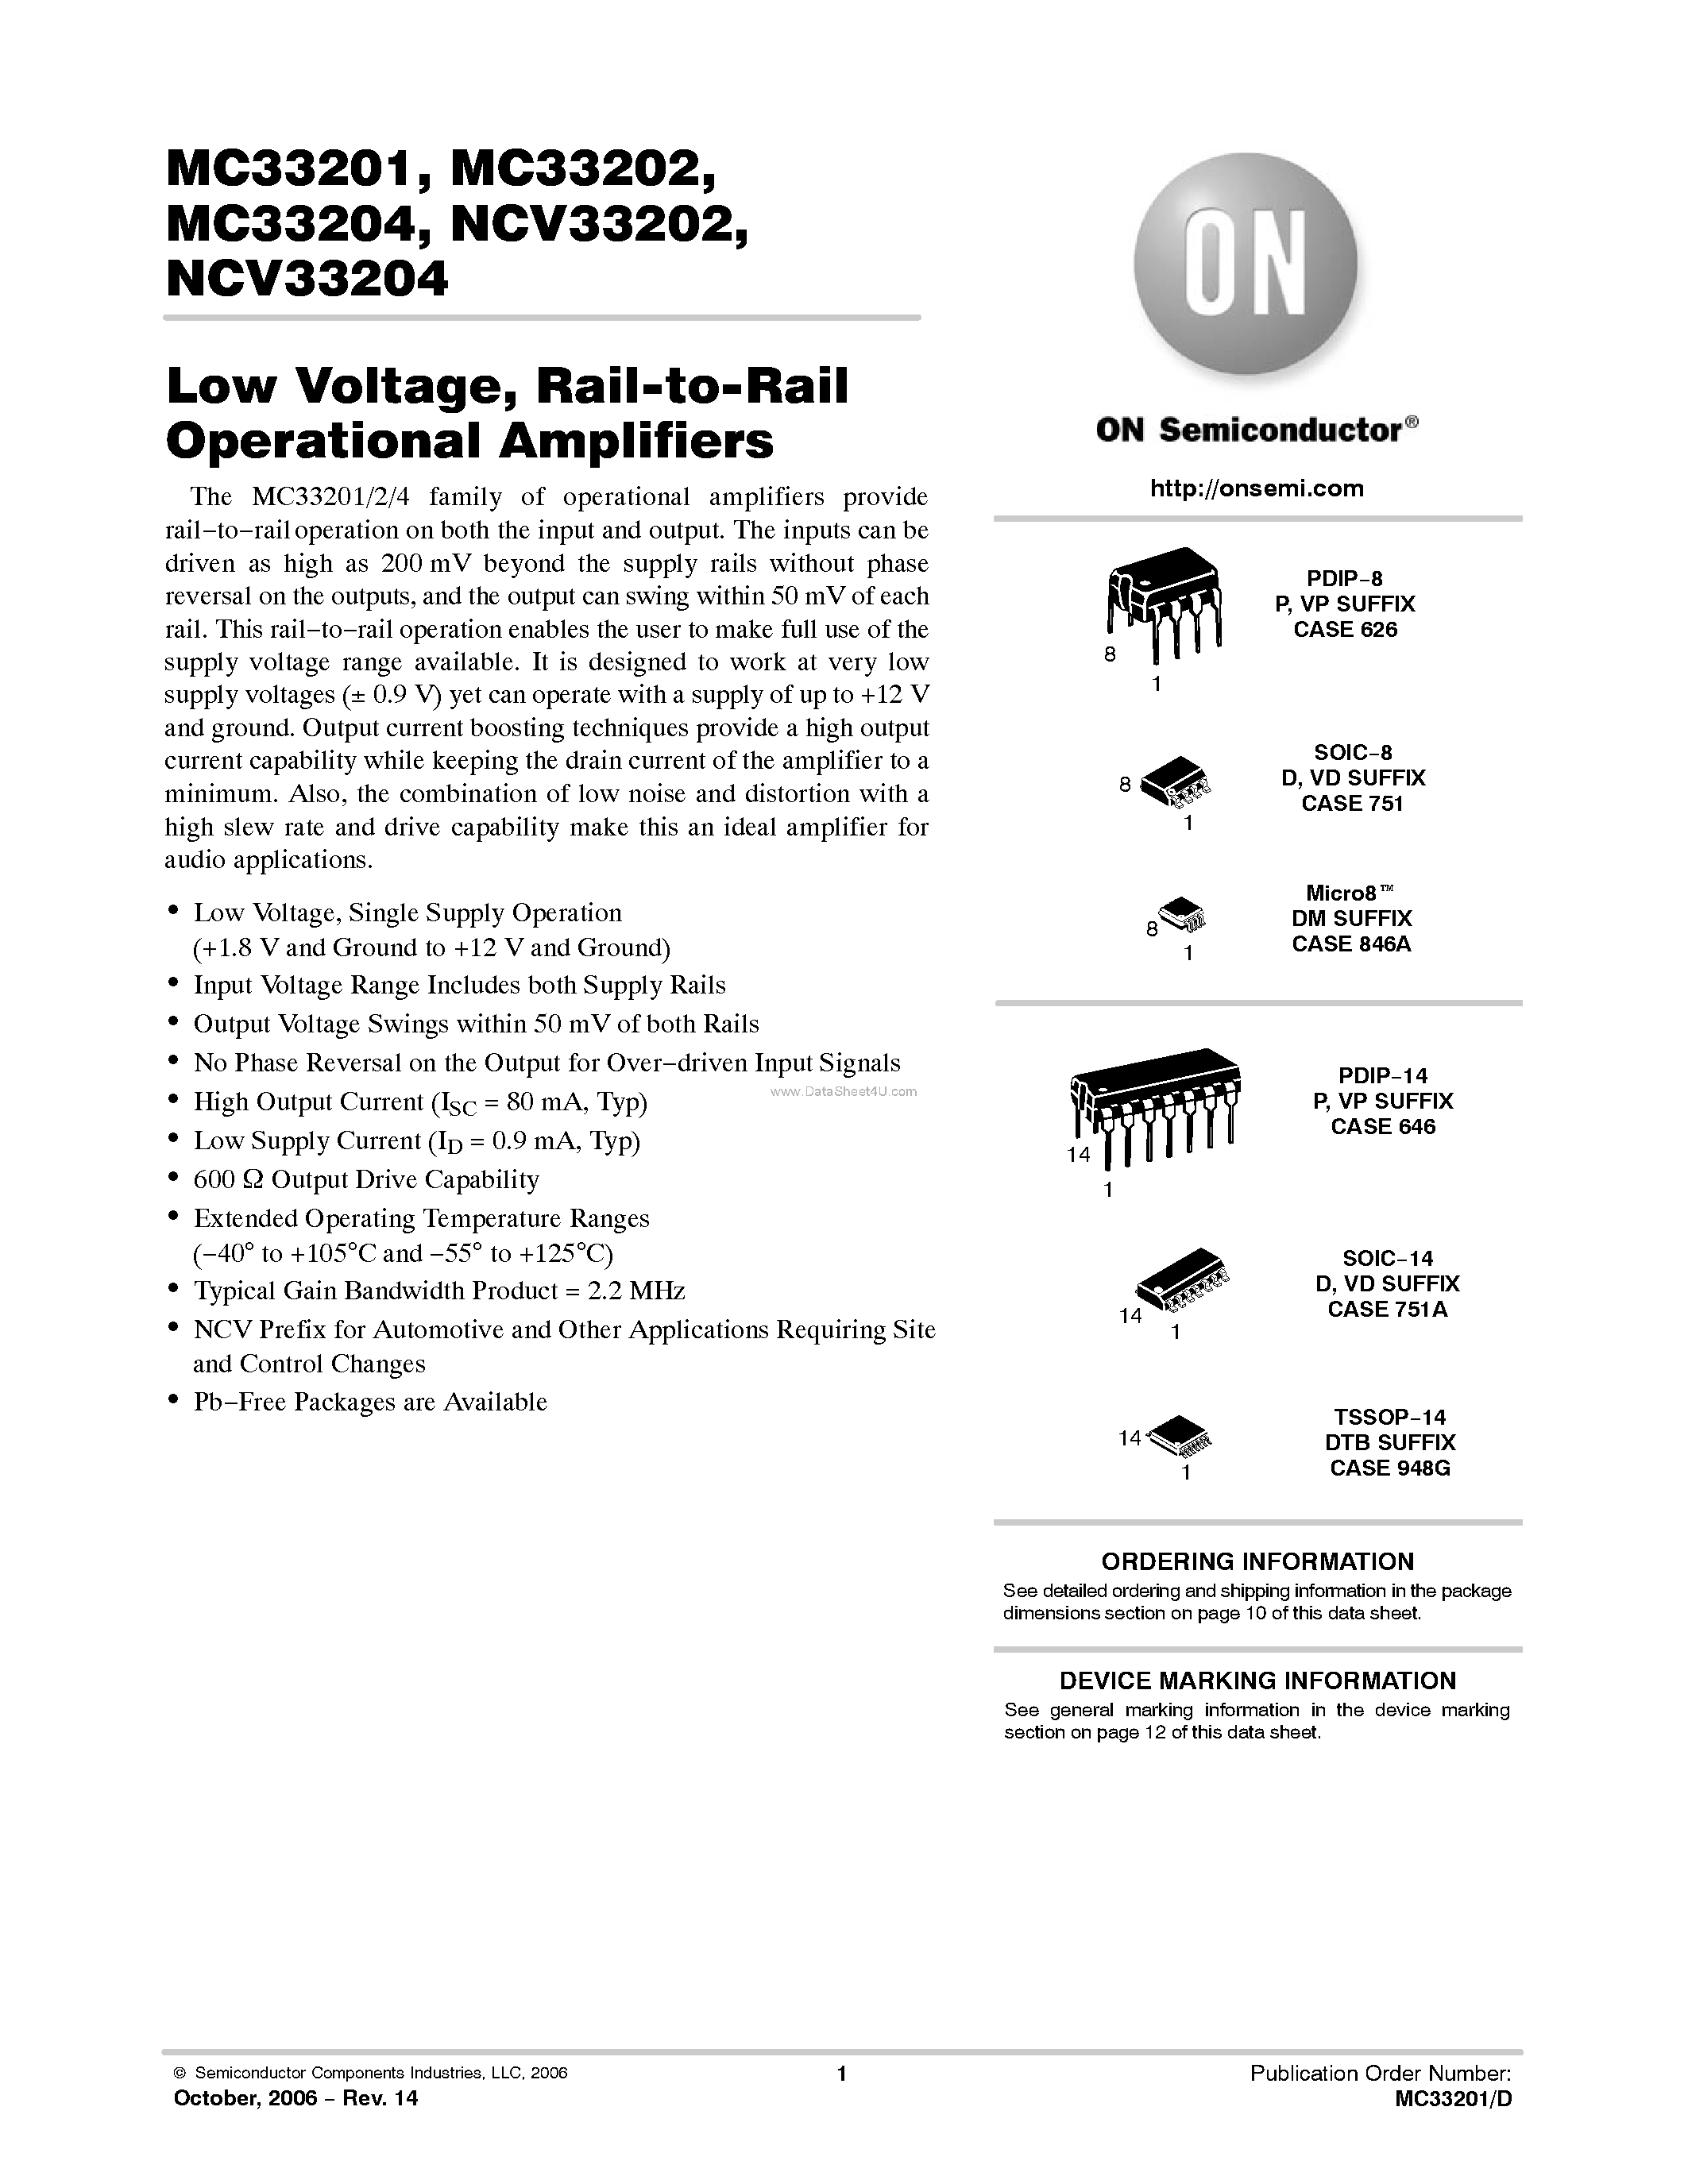 Даташит MC33201 - (MC33201 - MC33204) Rail-to-Rail Operational Amplifiers страница 1